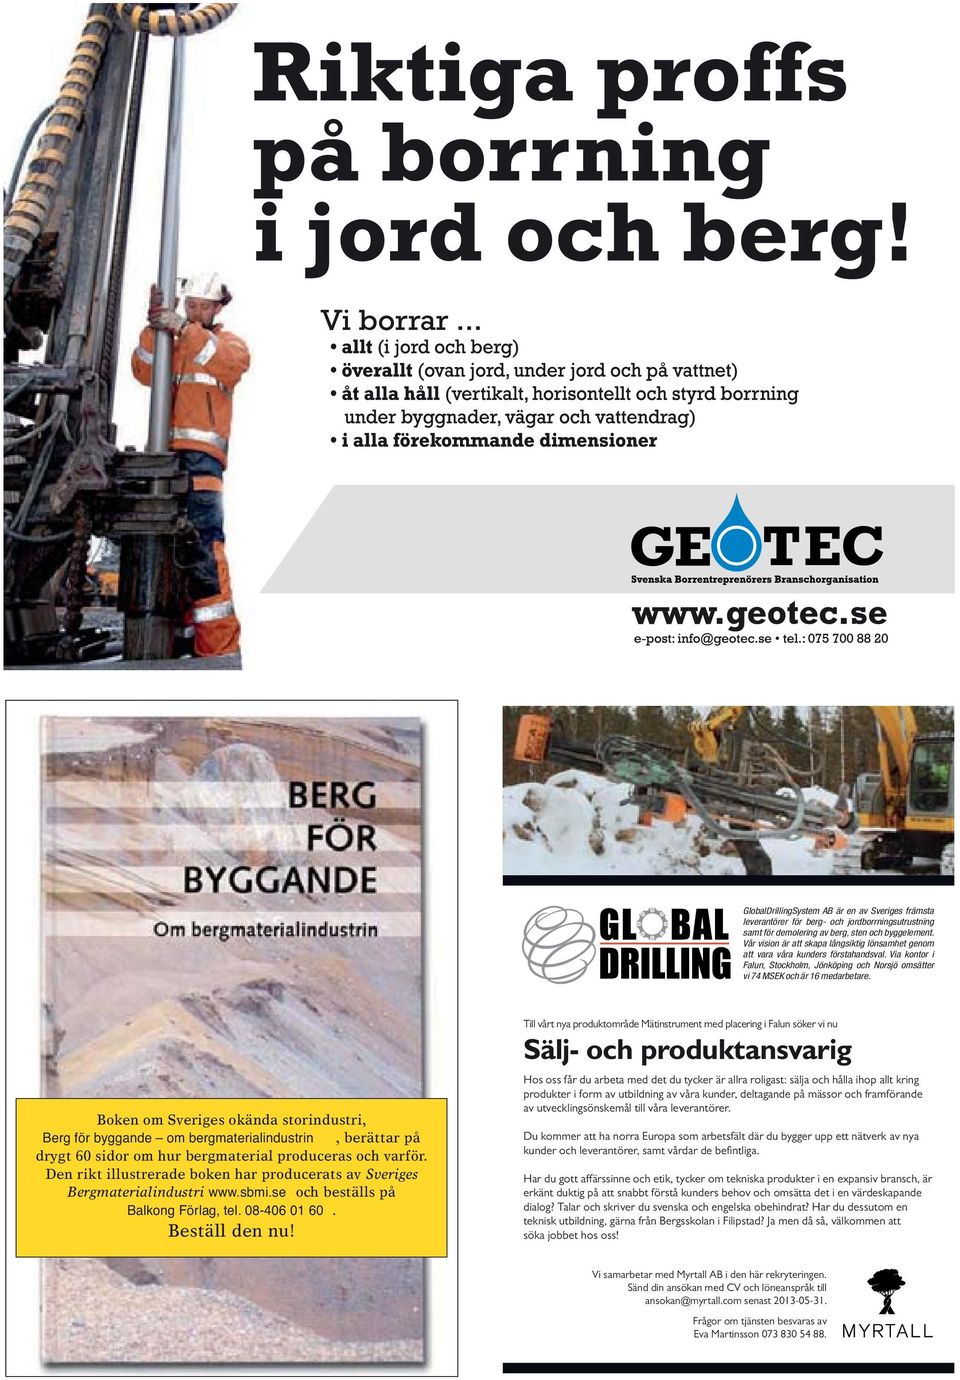 Boken om Sveriges okända storindustri, Berg för byggande om bergmaterialindustrin, berättar på drygt 60 sidor om hur bergmaterial produceras och varför.